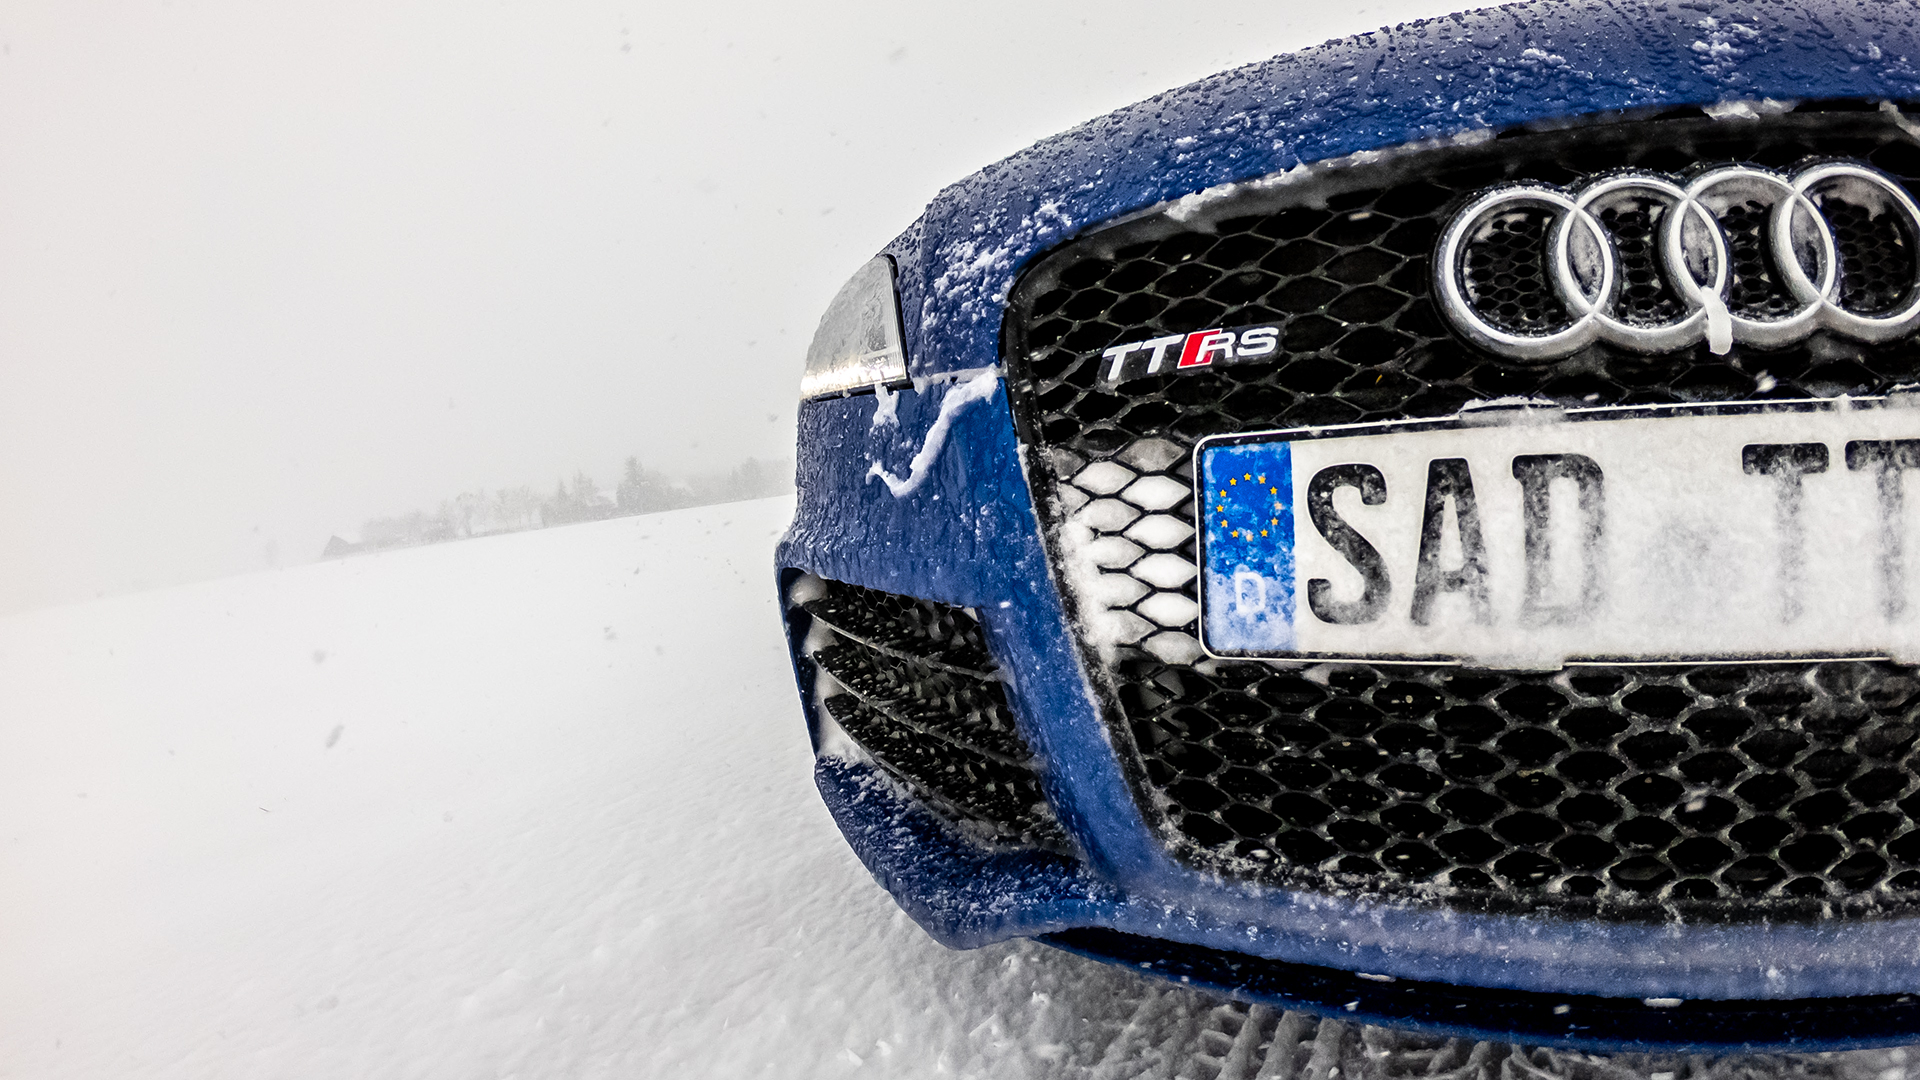 quattro Wetter - Audi TT RS plus sepangblue in snow